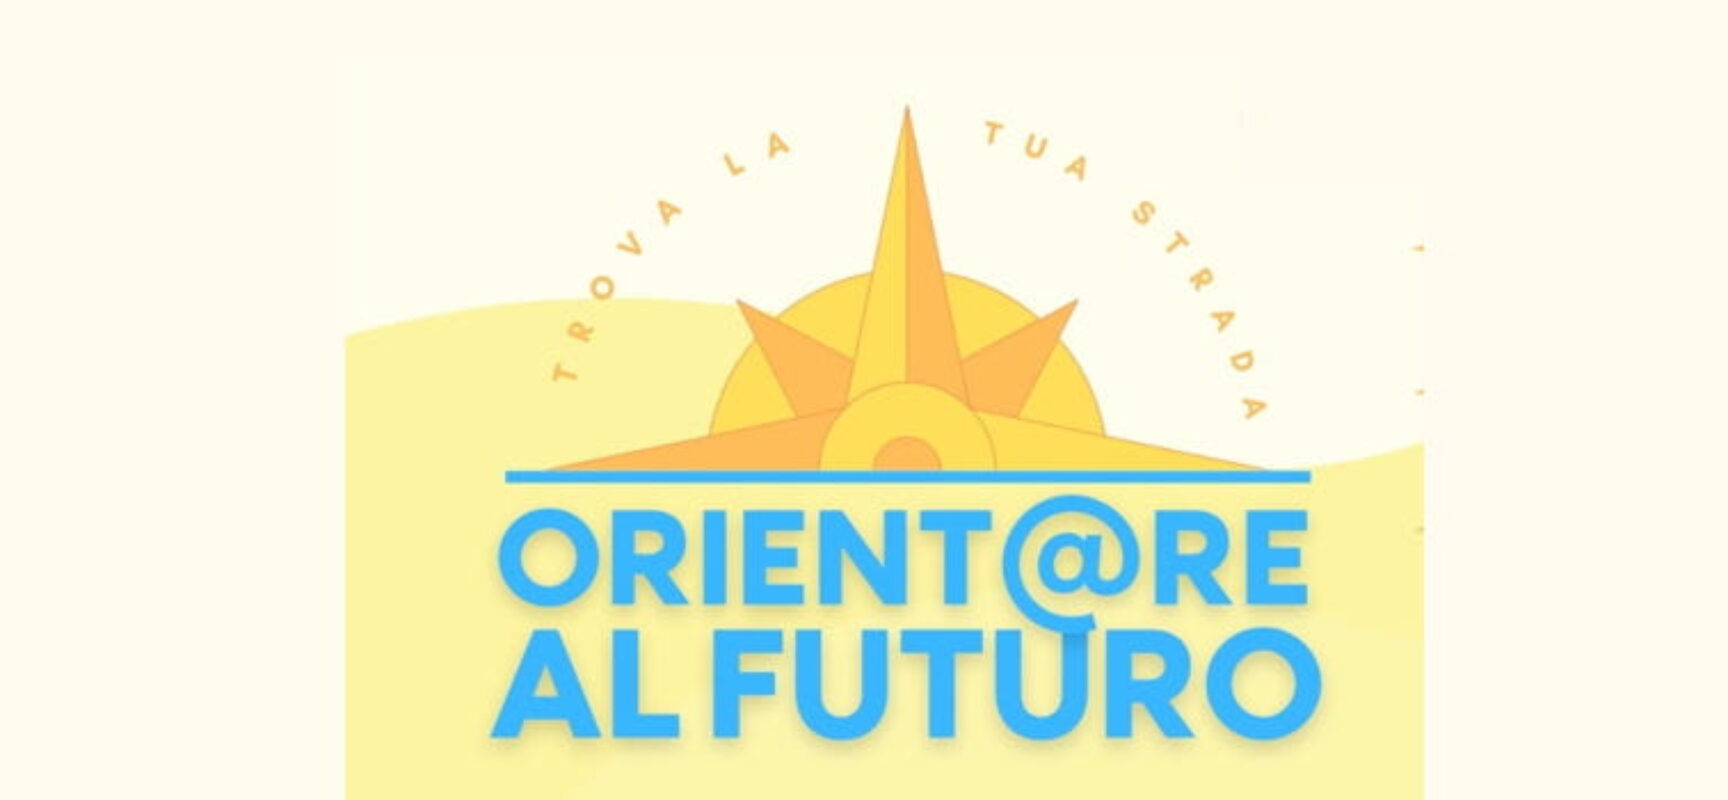 Orient@re @l futuro: una nuova rete per le politiche attive del lavoro a Bisceglie